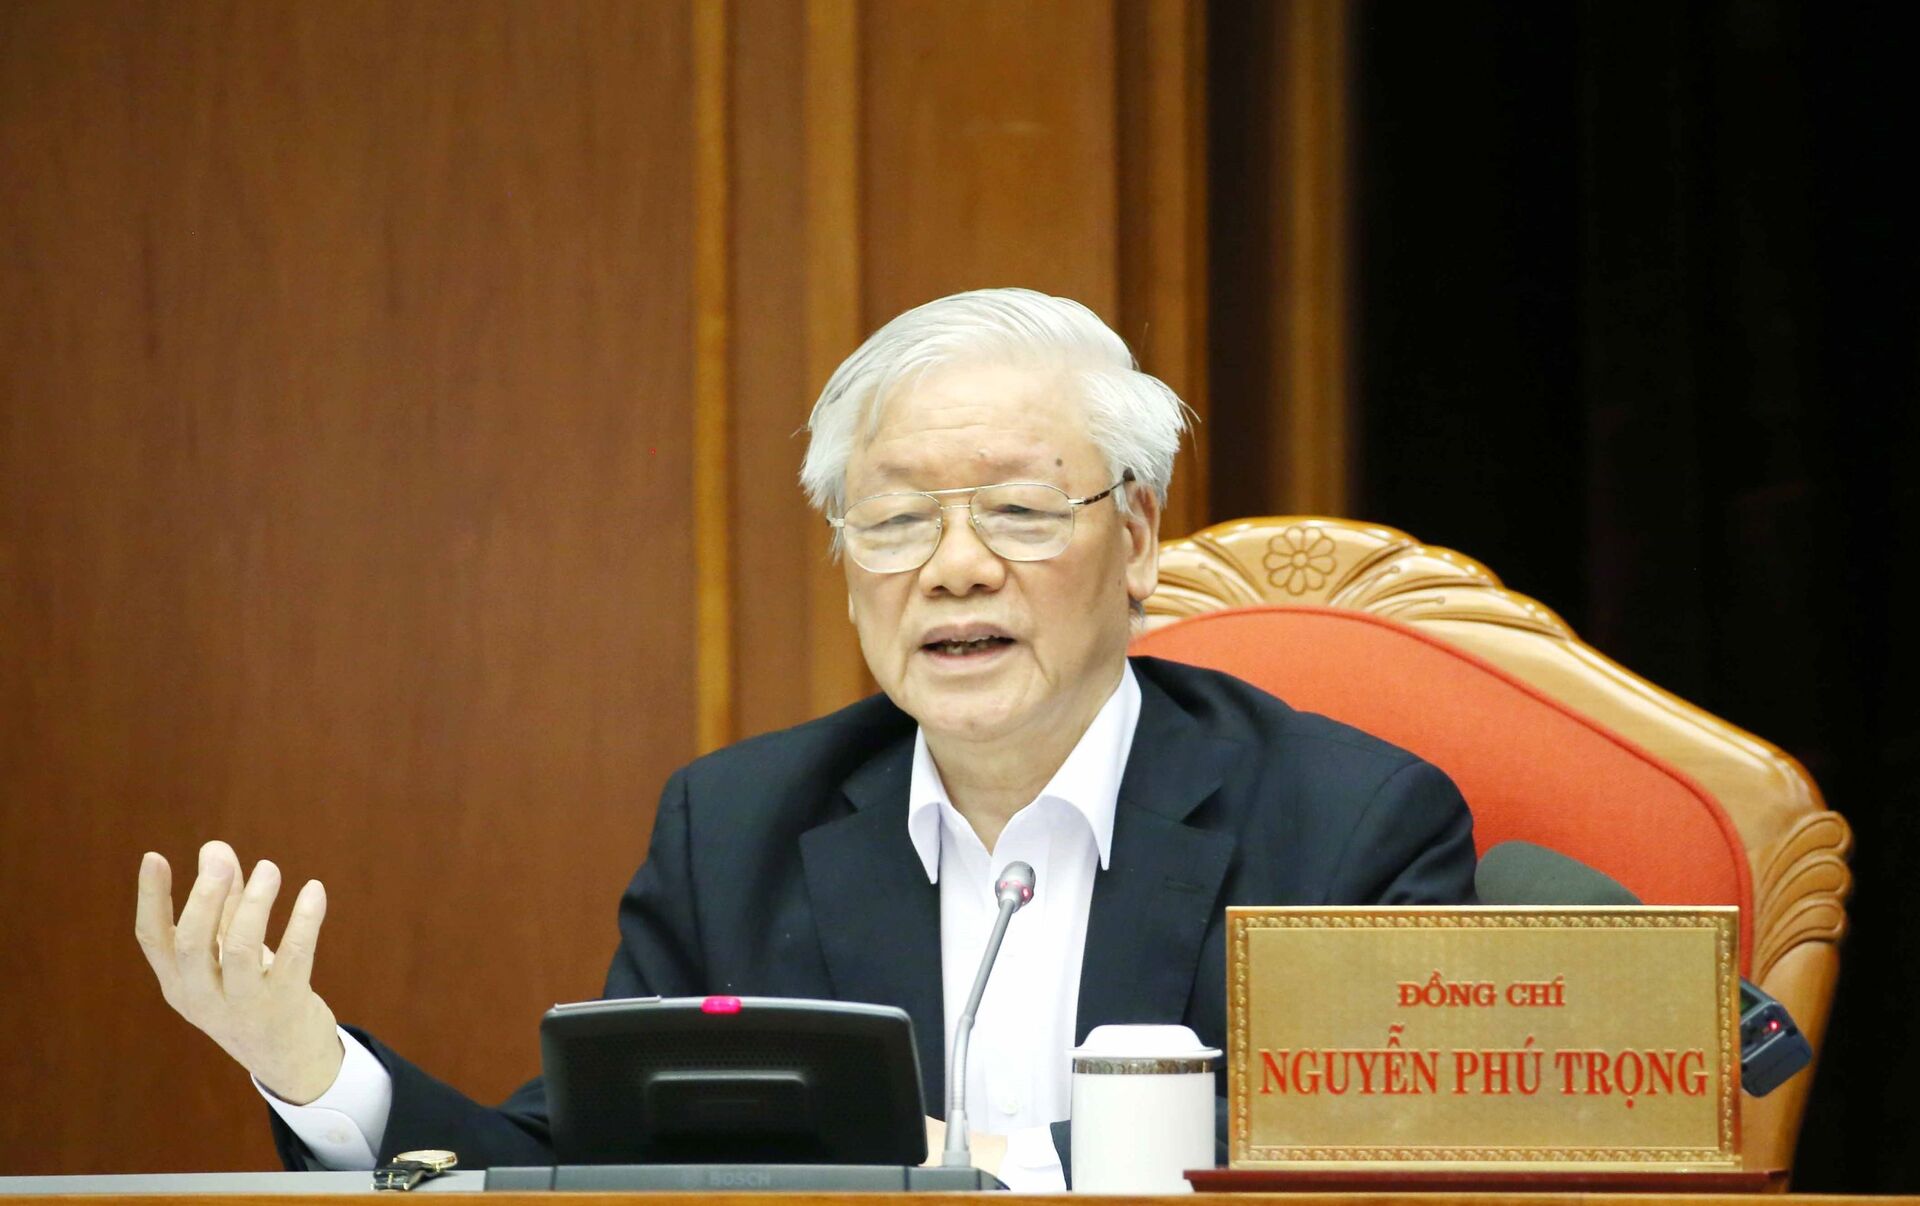 Bao 13. Нгуен фу Чонг. Генерального секретаря Нгуен фу Чонга в борьбе с коррупцией в Вьетнам.